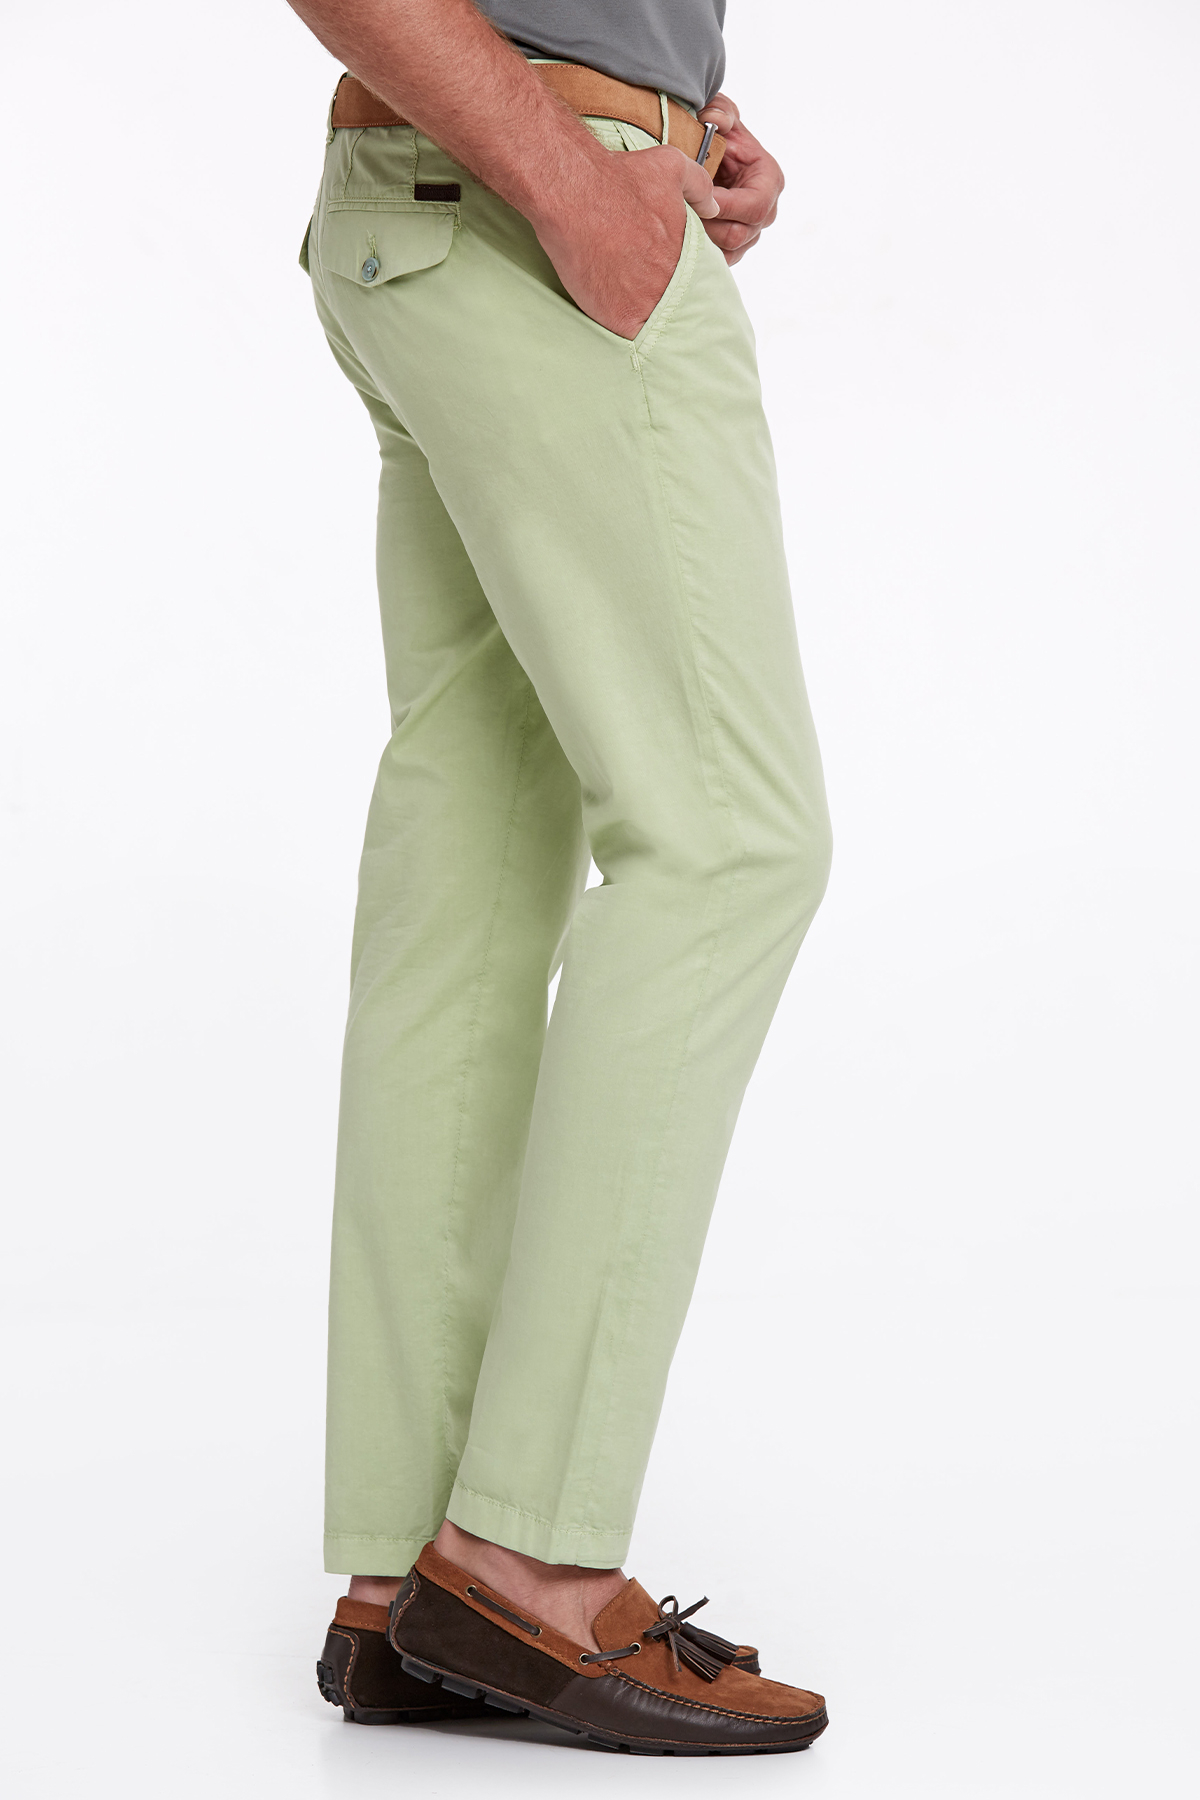 Açık Yeşil Yazlık Chino Pantolon